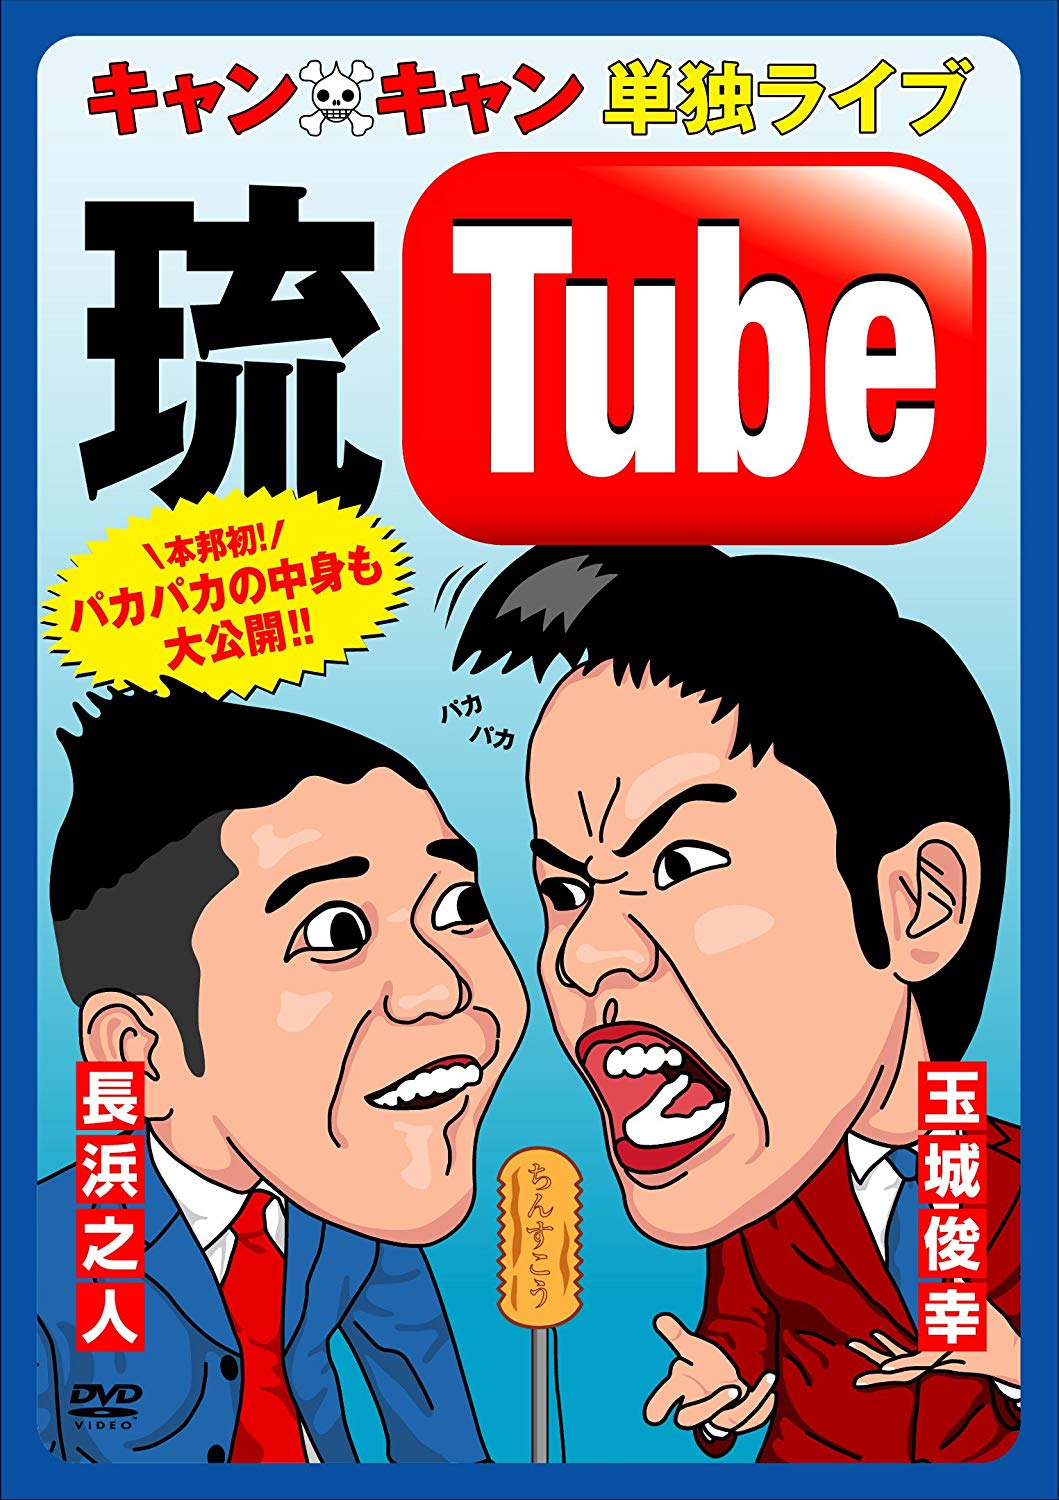 「キャン×キャン 単独ライブ“琉Tube”」DVD